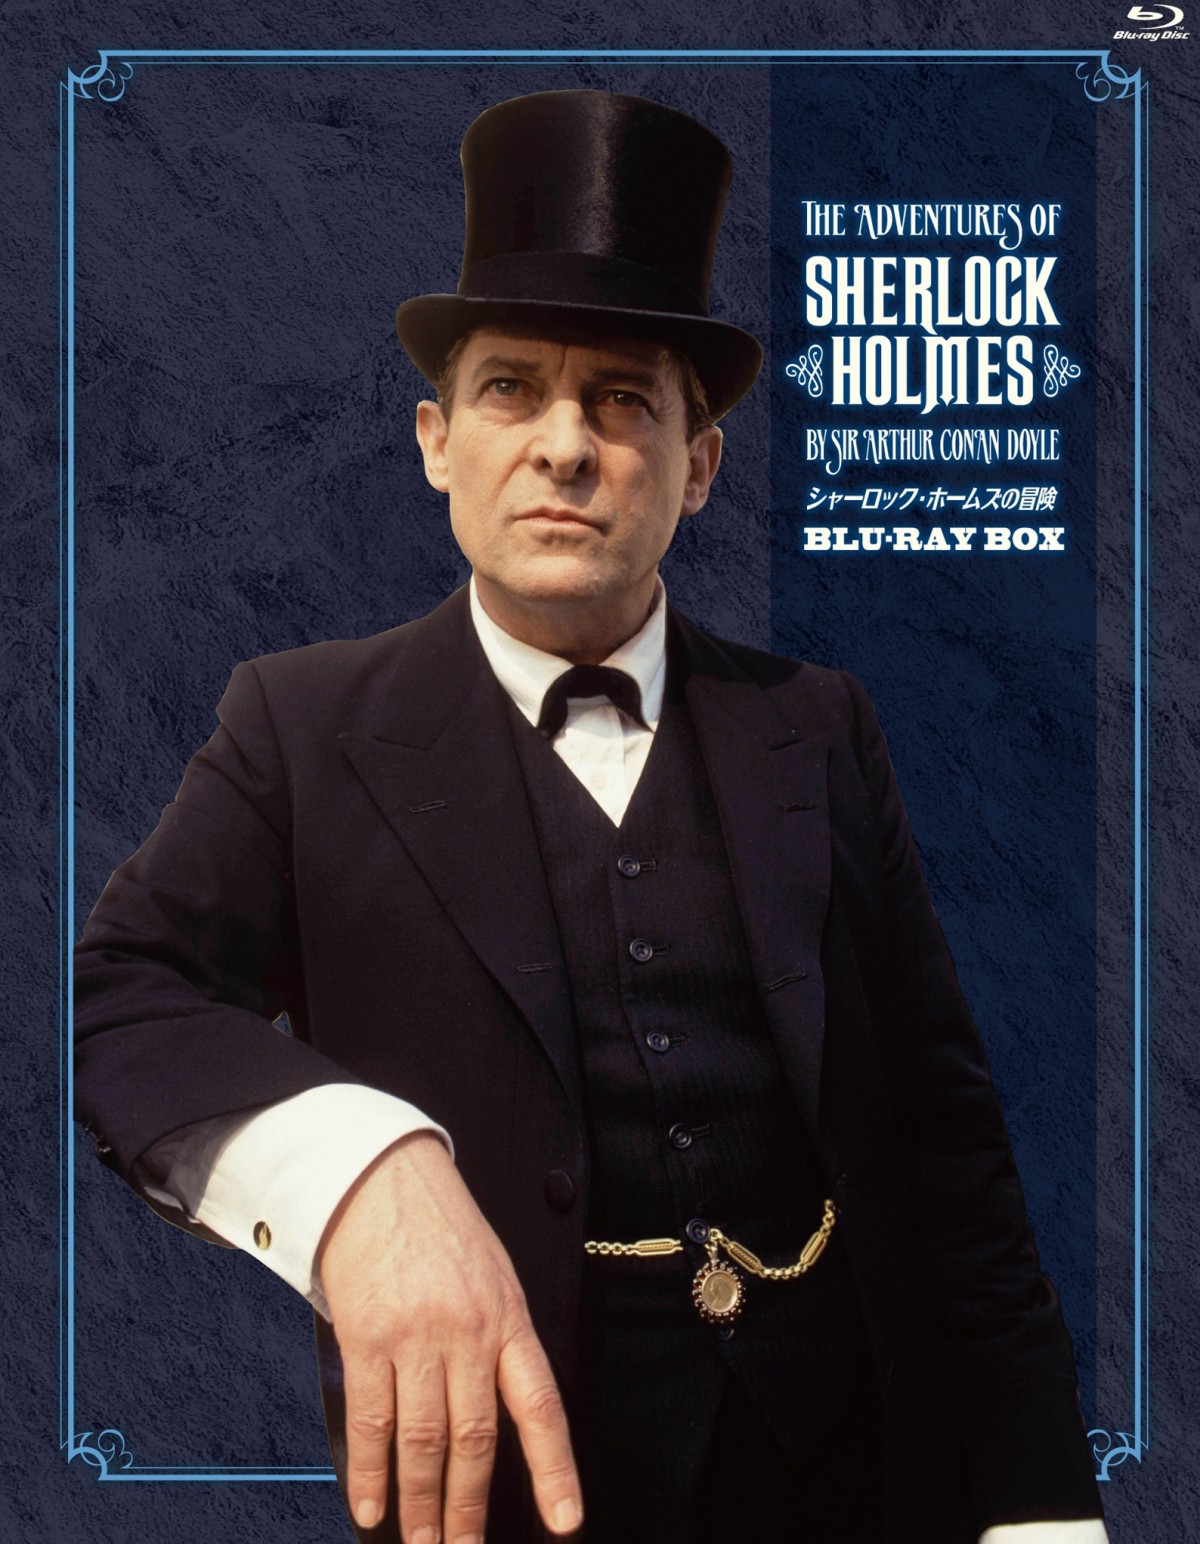 シャーロック ホームズの冒険 名作グラナダ版が世界初ブルーレイ化 名言集 キャストインタビューの豪華ブックレット付 12年12月27日 海外 ドラマ クランクイン